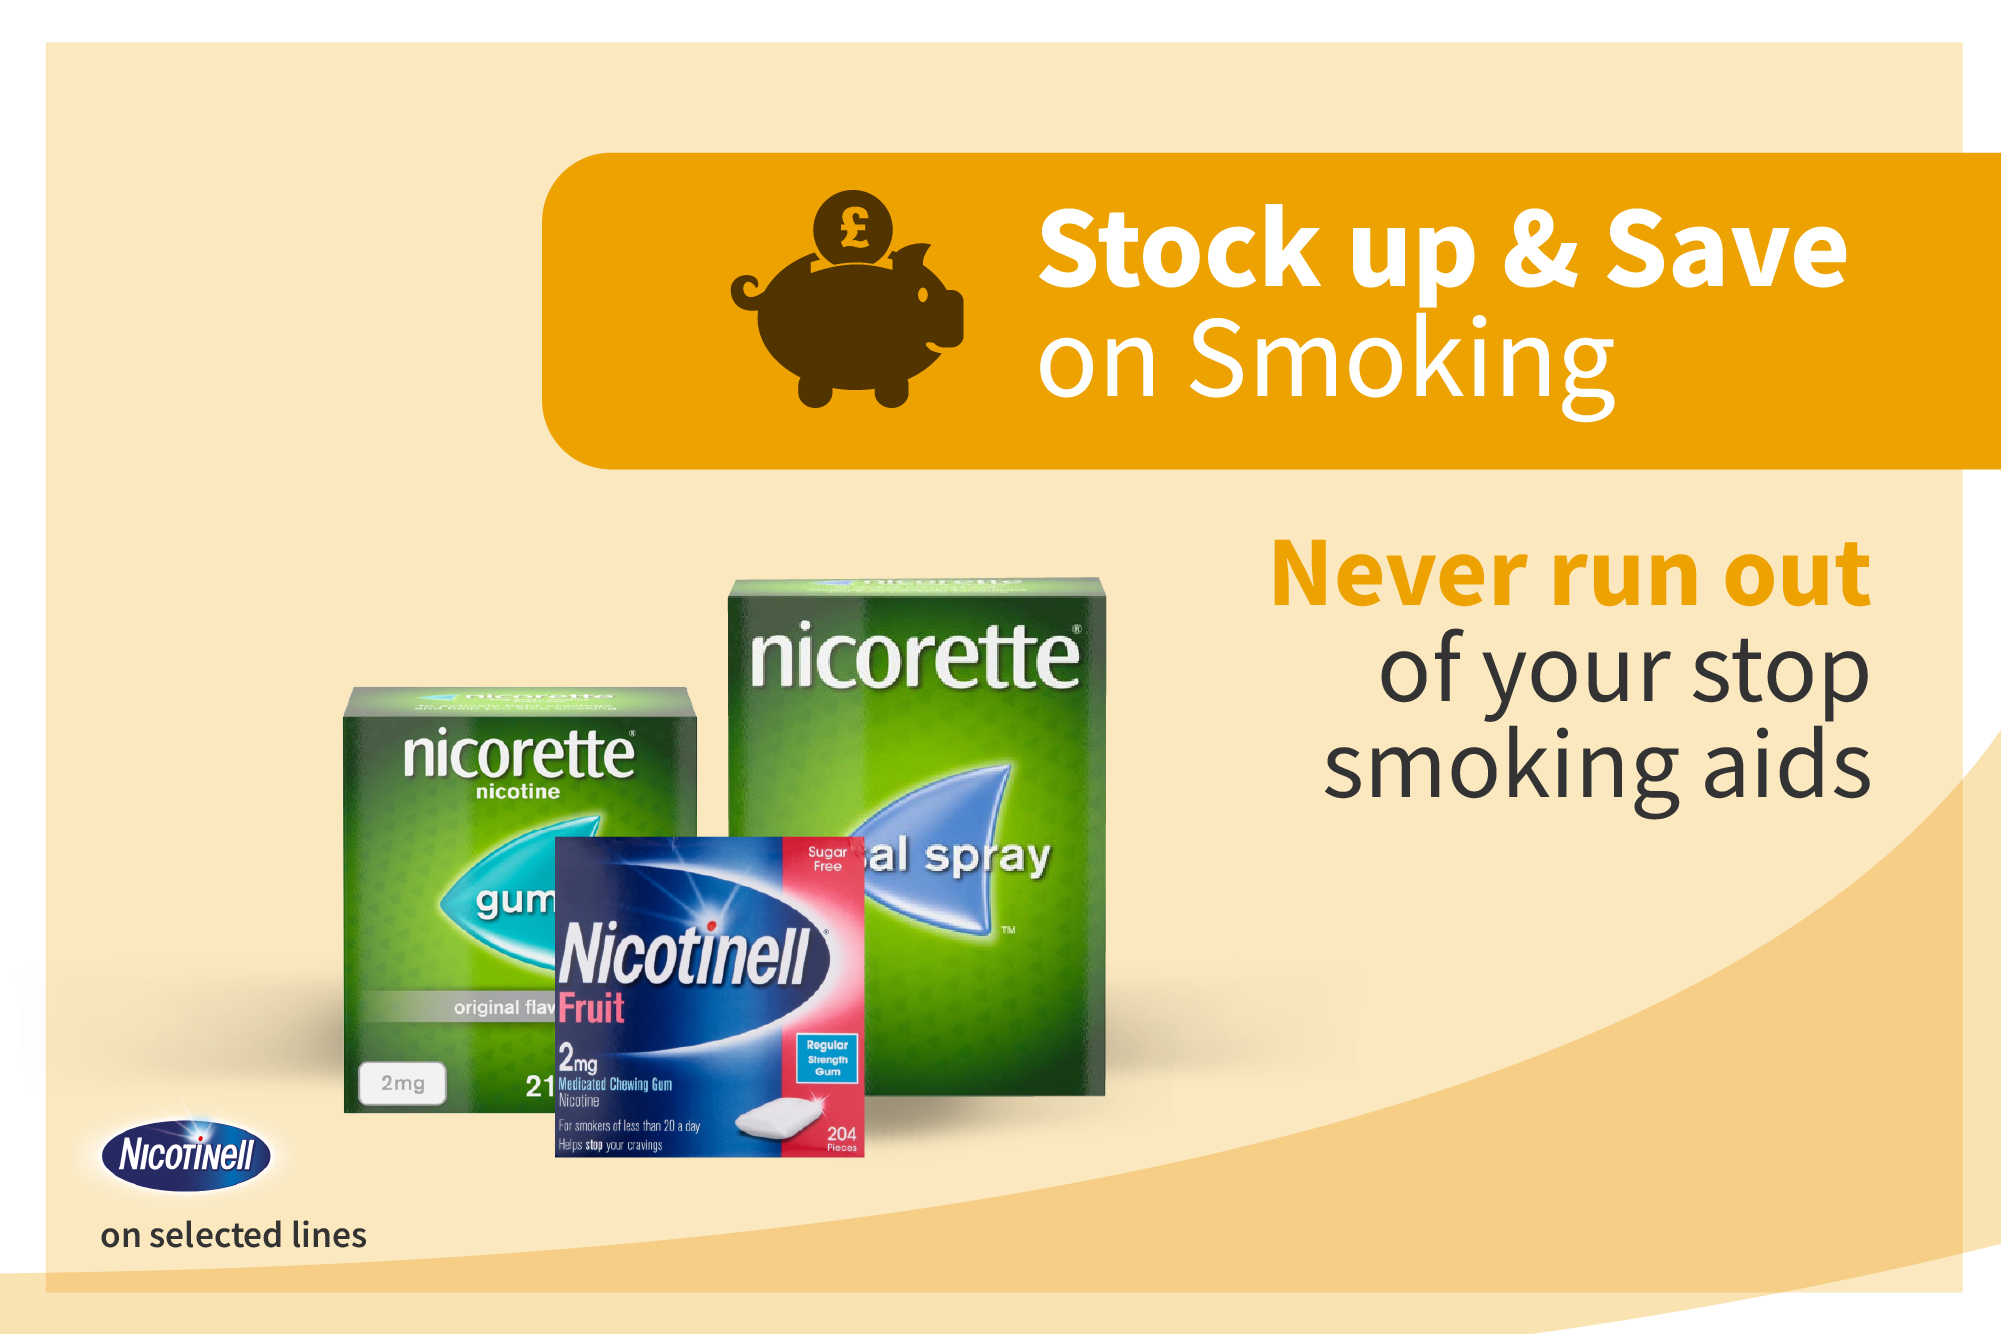 Stock up & Save on Smoking